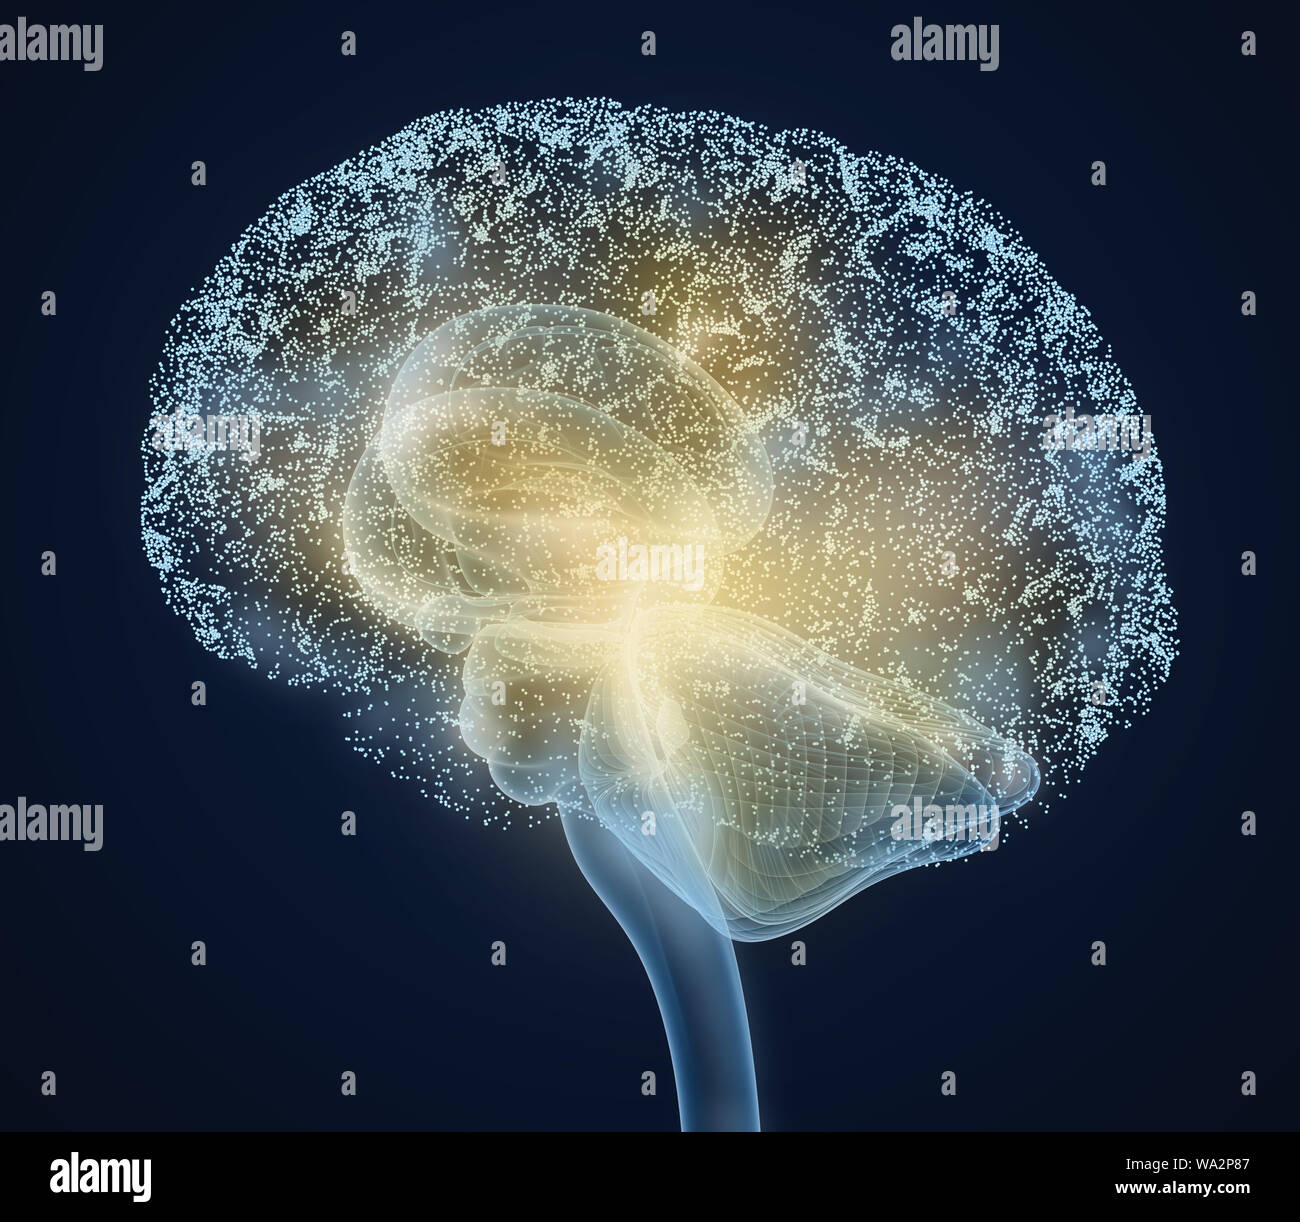 Menschliche Gehirn Röntgen-Scan, medizinisch genaue 3D-Illustration Stockfoto